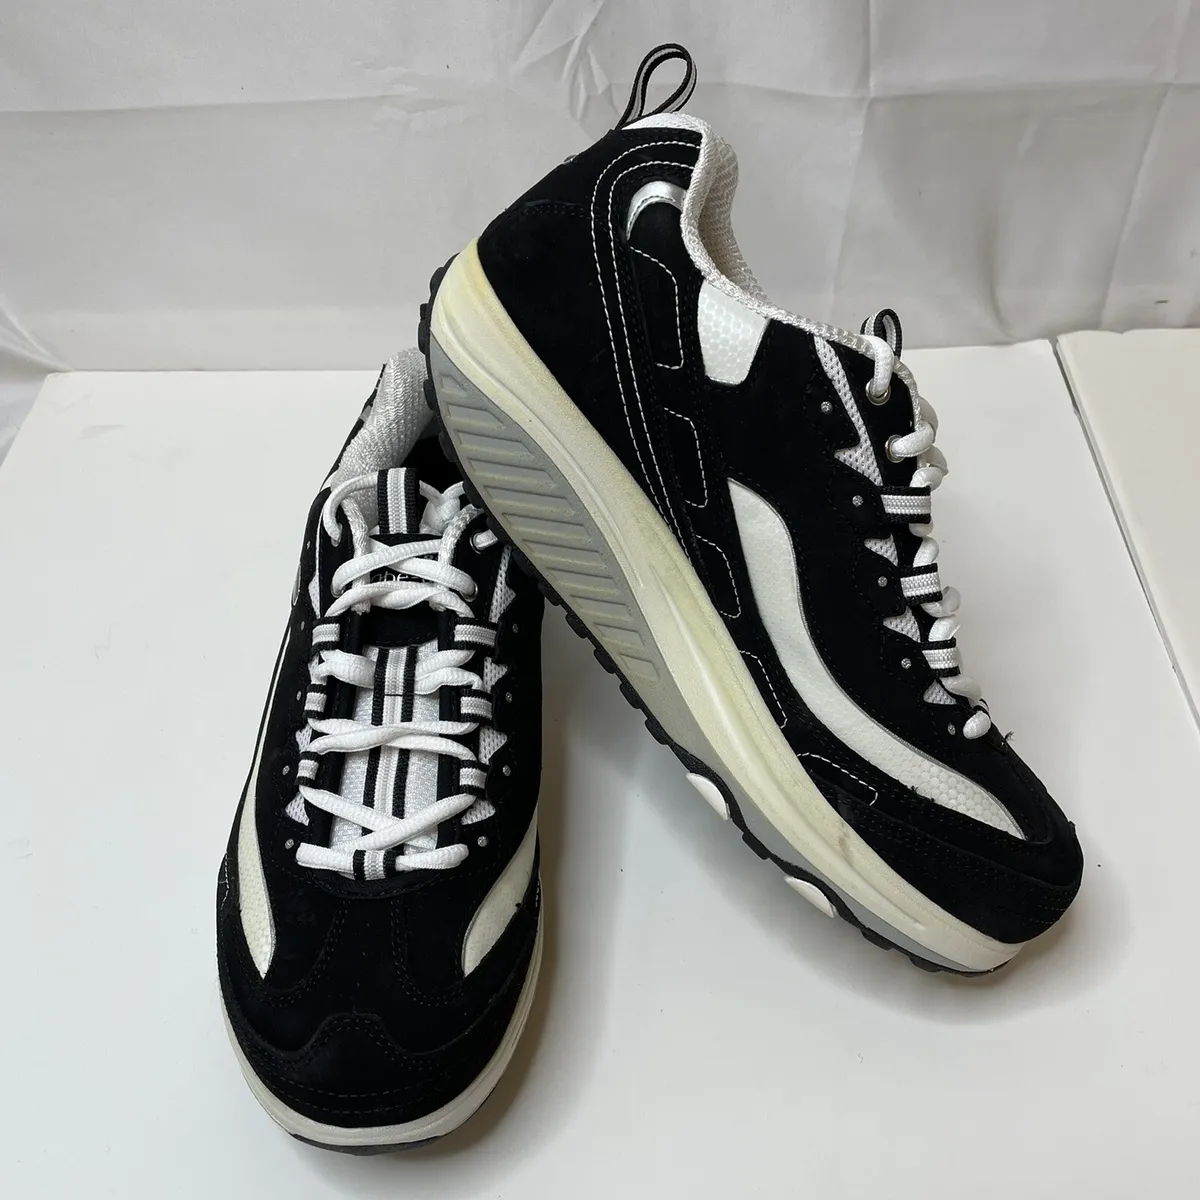 Ny mening Brug for Væsen Skechers Shape-Ups Women's Sneakers 9 Black White Walking Shoes | eBay